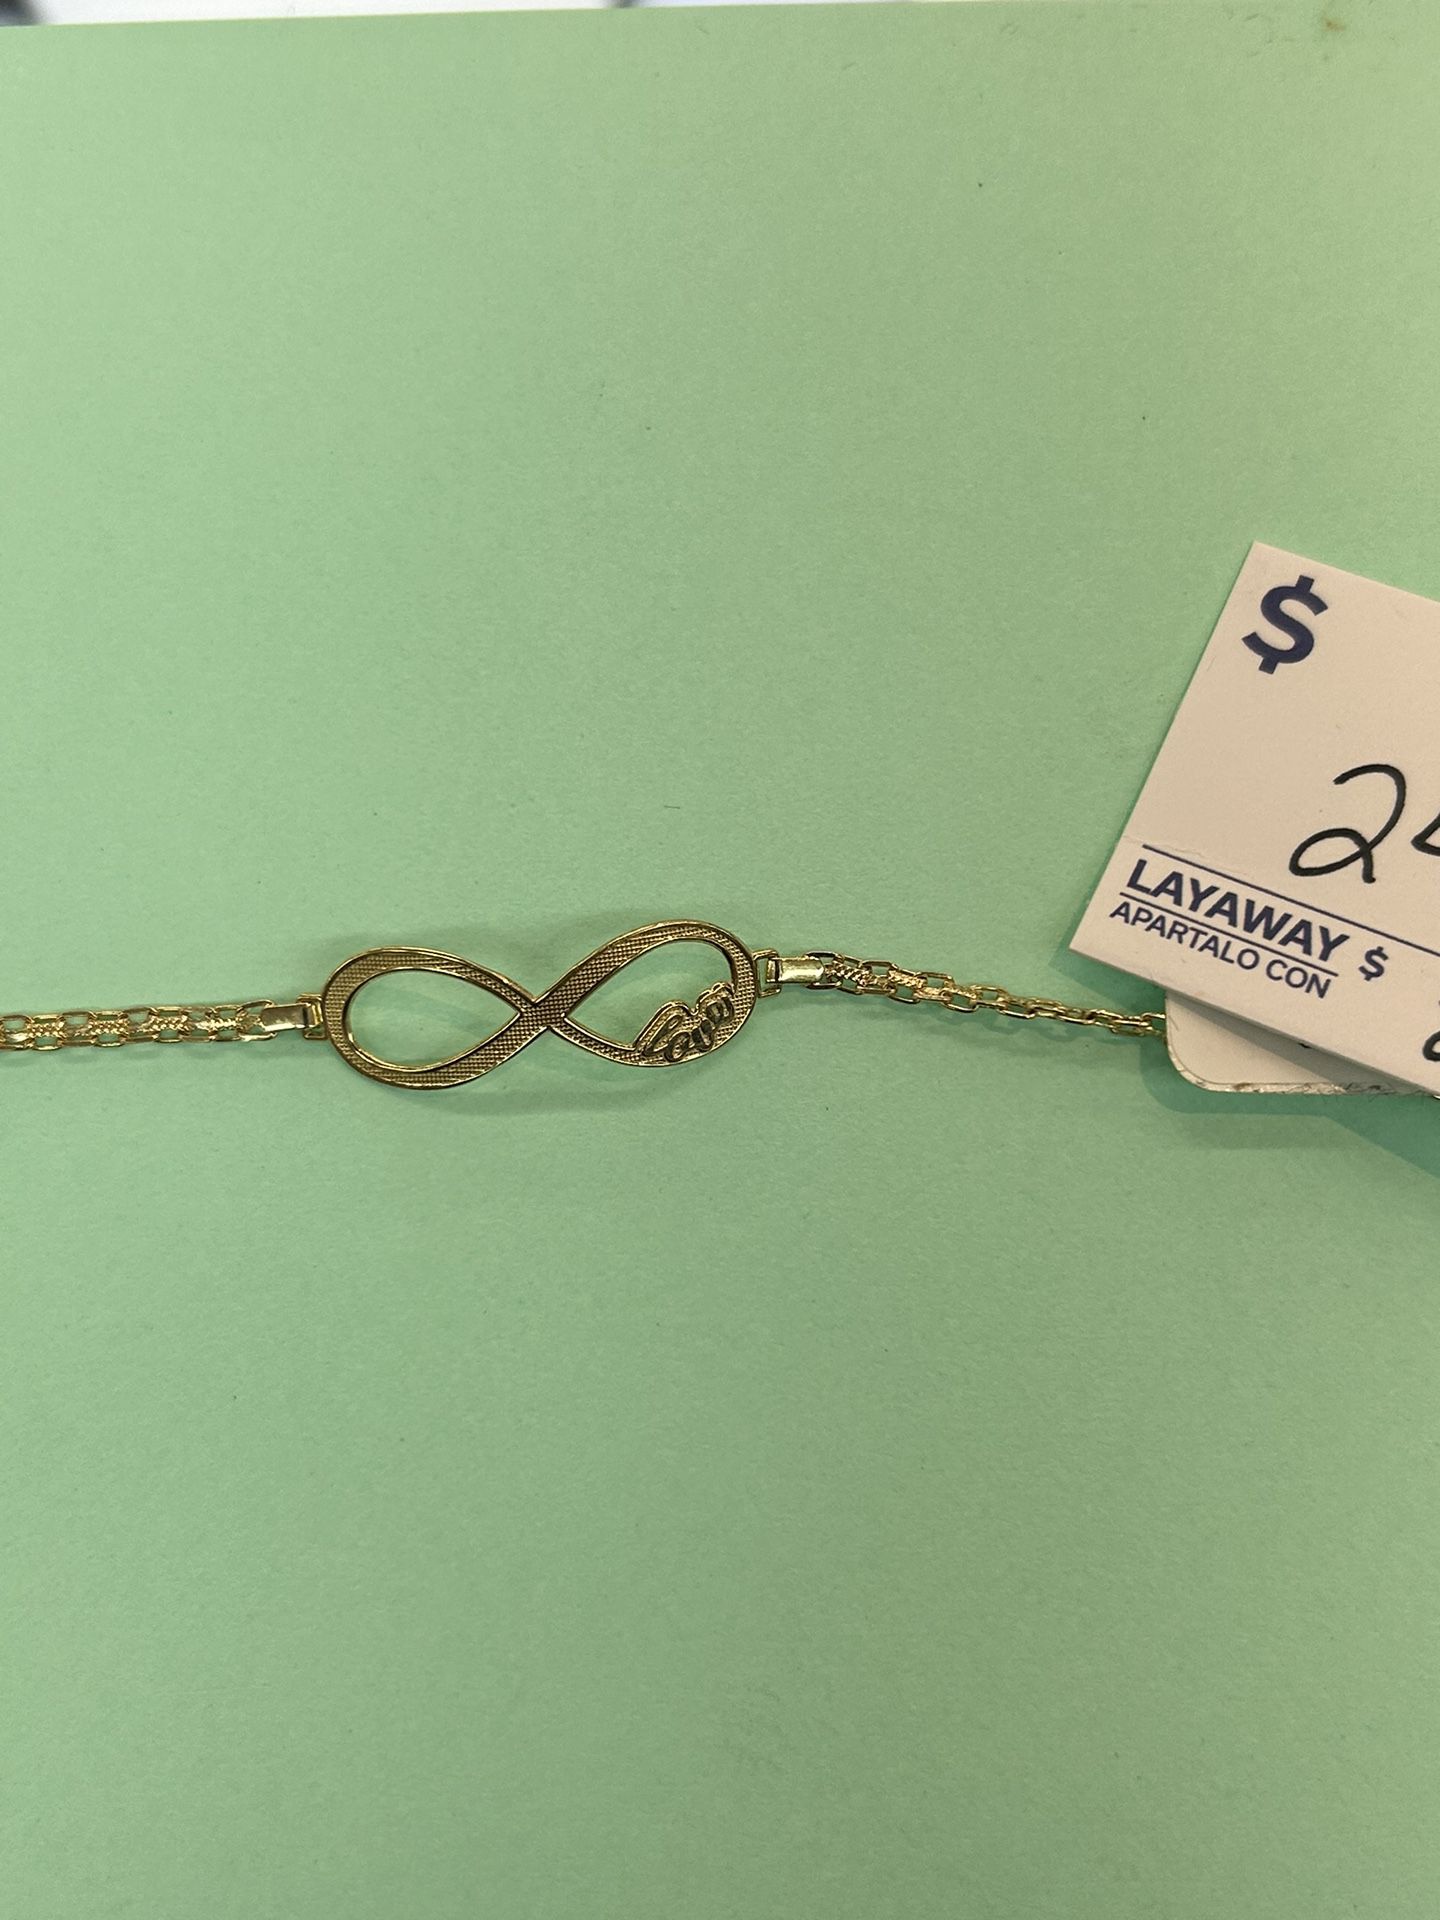 Fcp2344 10k Gold Infinity Bracelet 